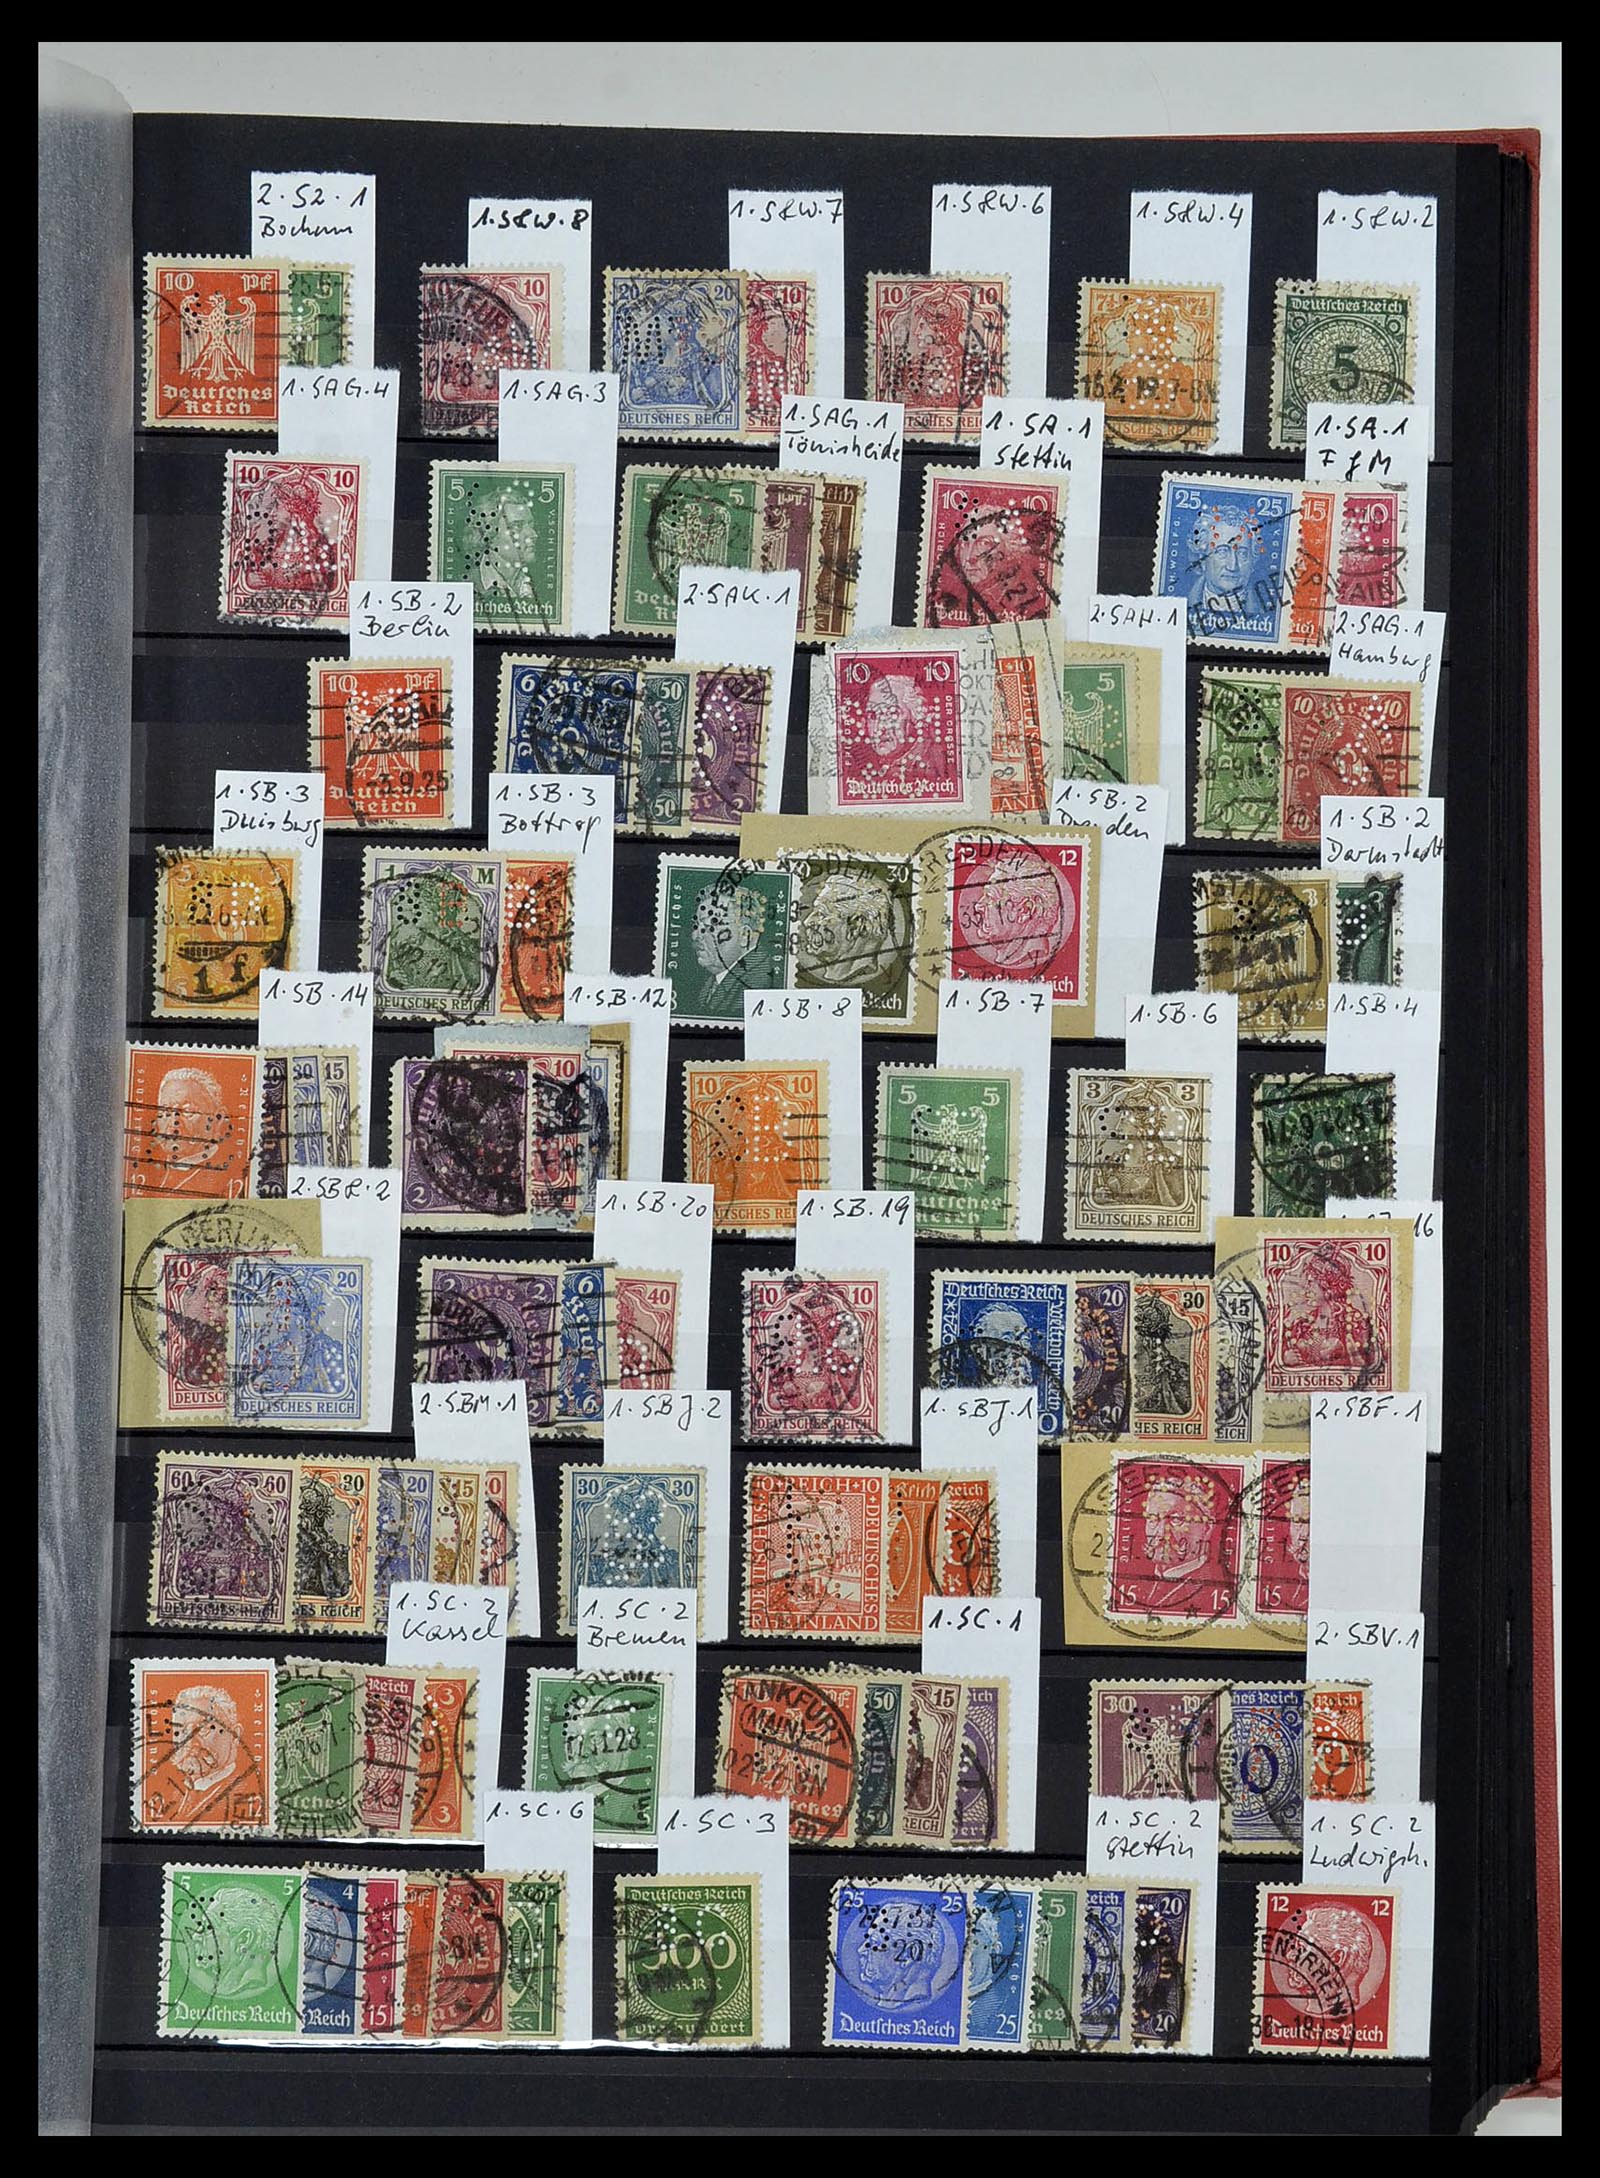 34432 033 - Stamp Collection 34432 German Reich perfins 1900-1933.